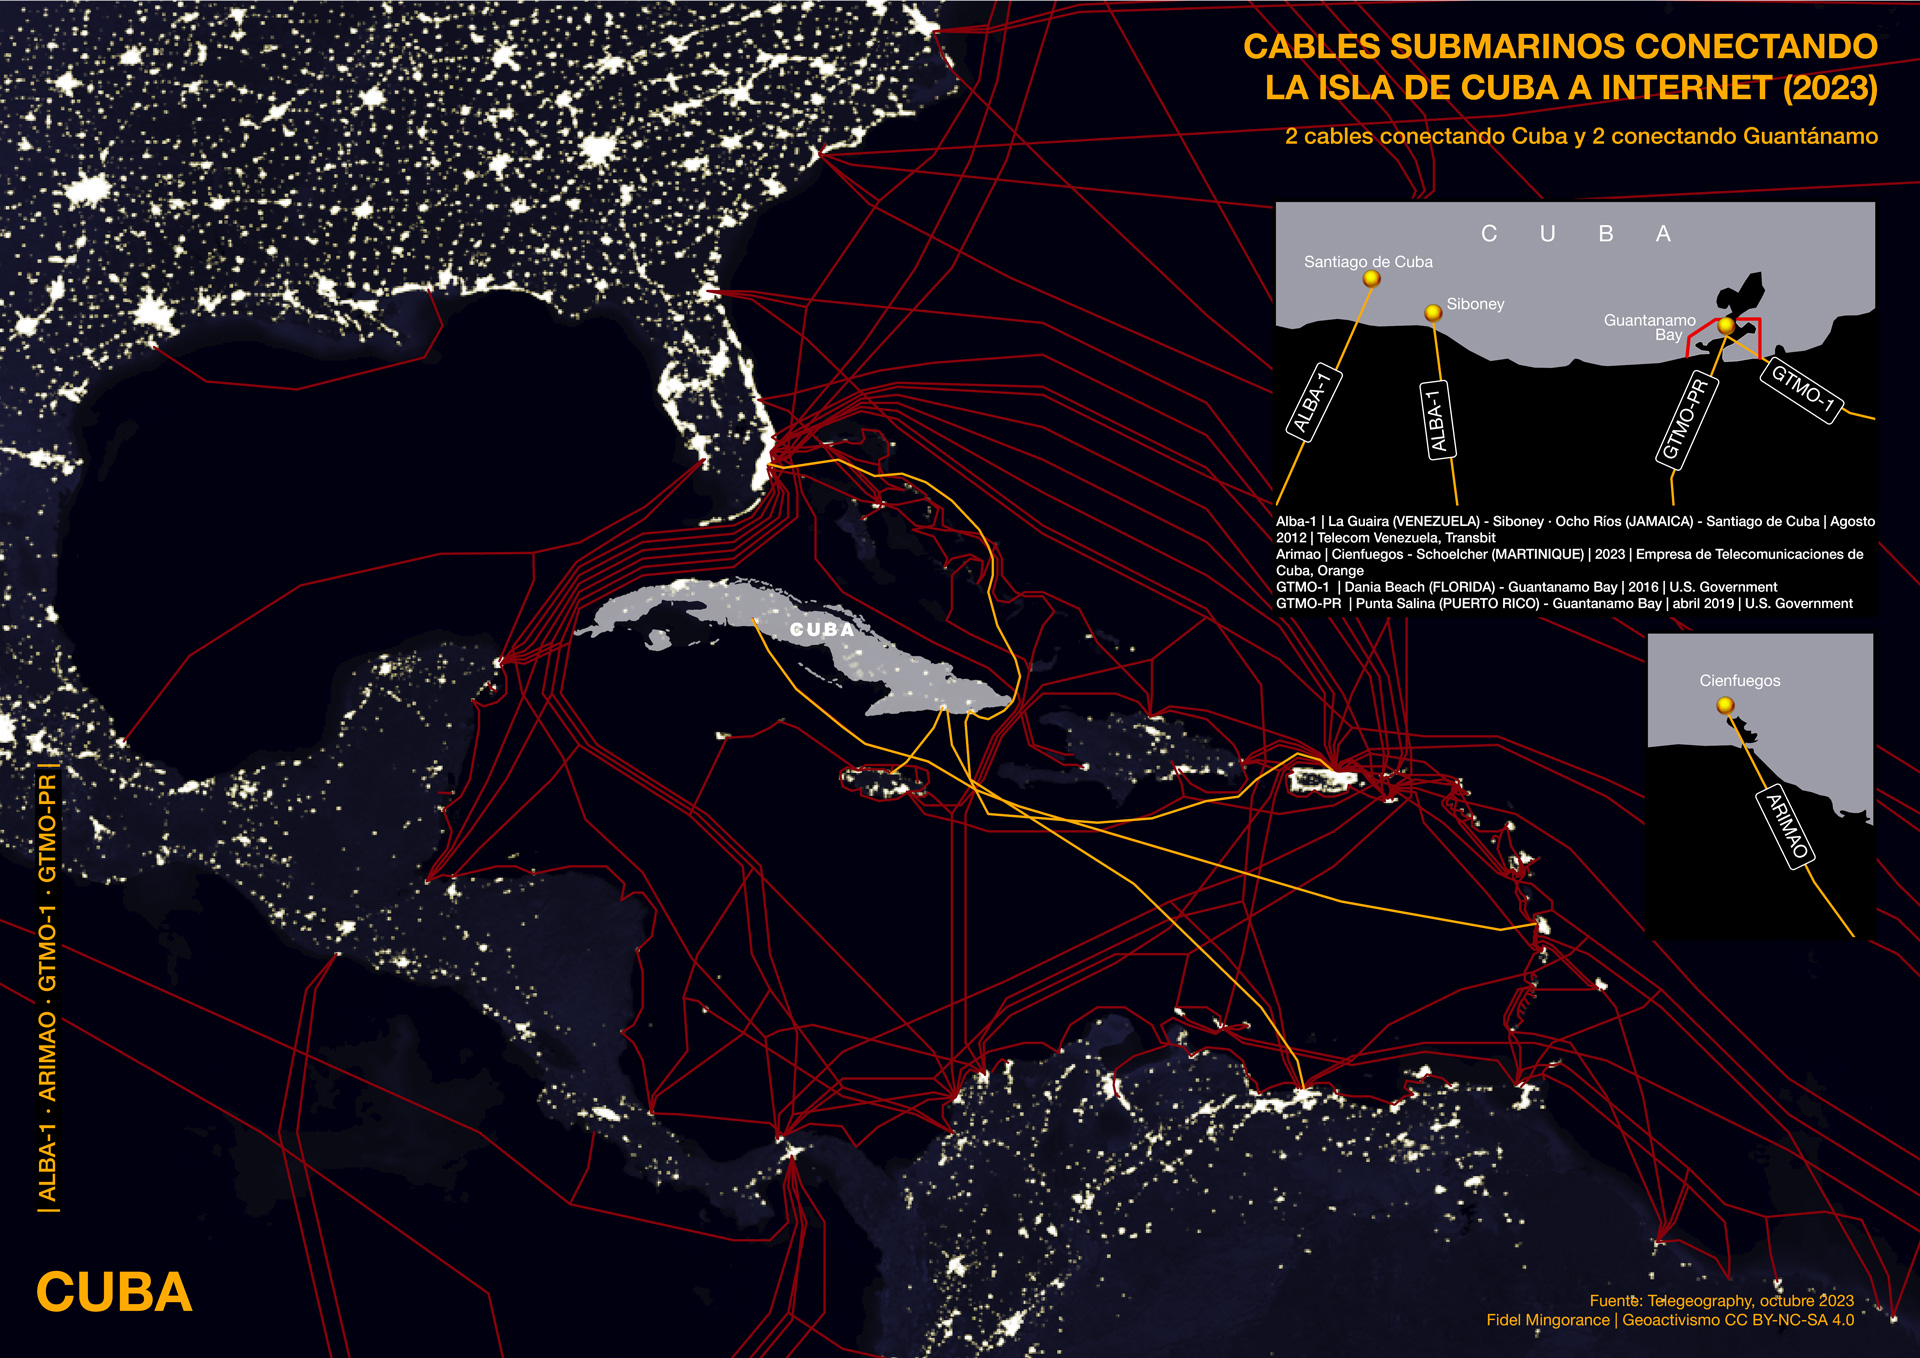 Cables submarinos conectando la isla de Cuba a Internet (2023)